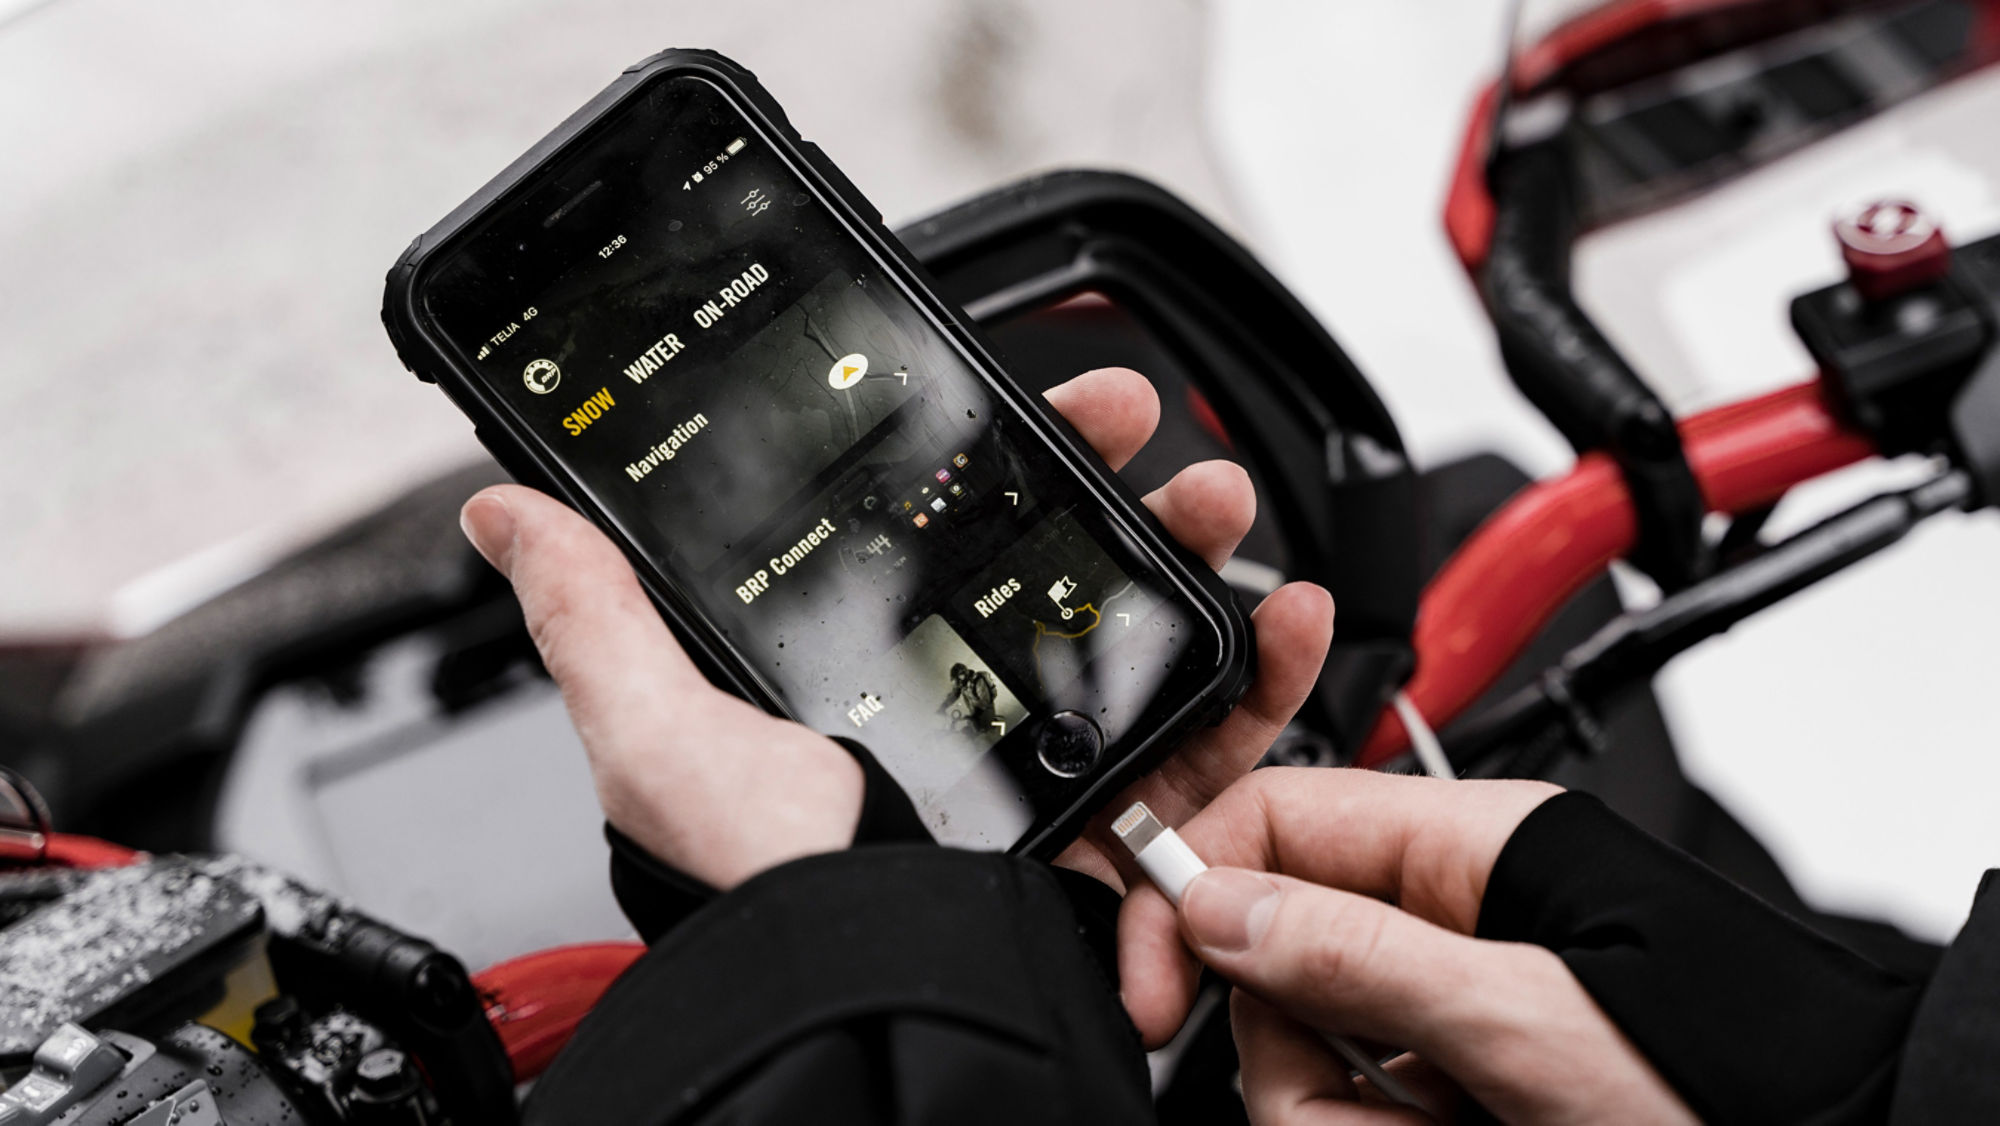 The BRP GO! on a phone near a Lynx snowmobile